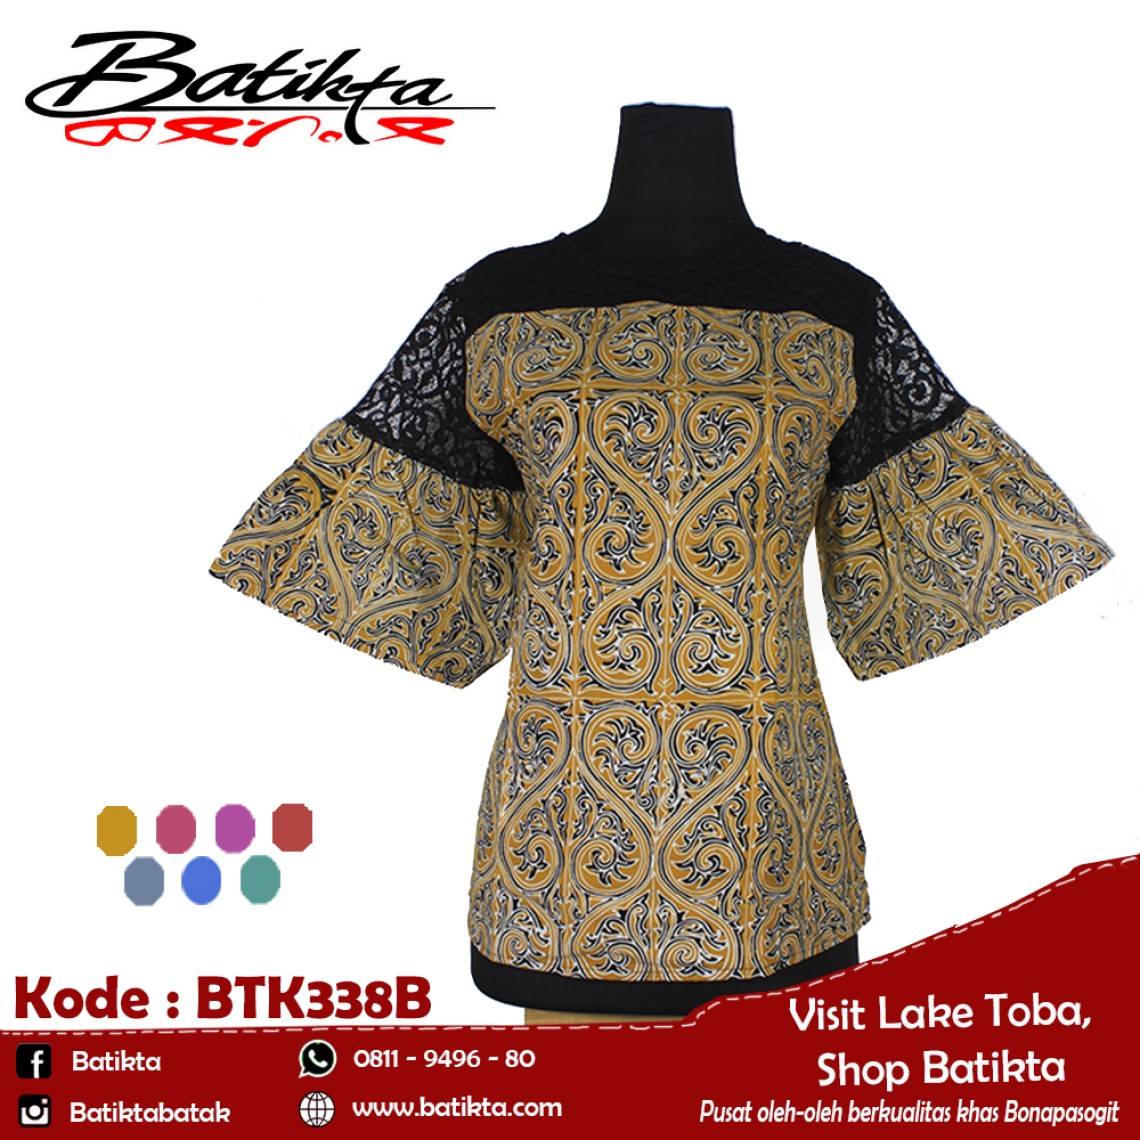 BTK338B Blus Batik Motif Gorga Warna Kuning Putih Hitam profile picture